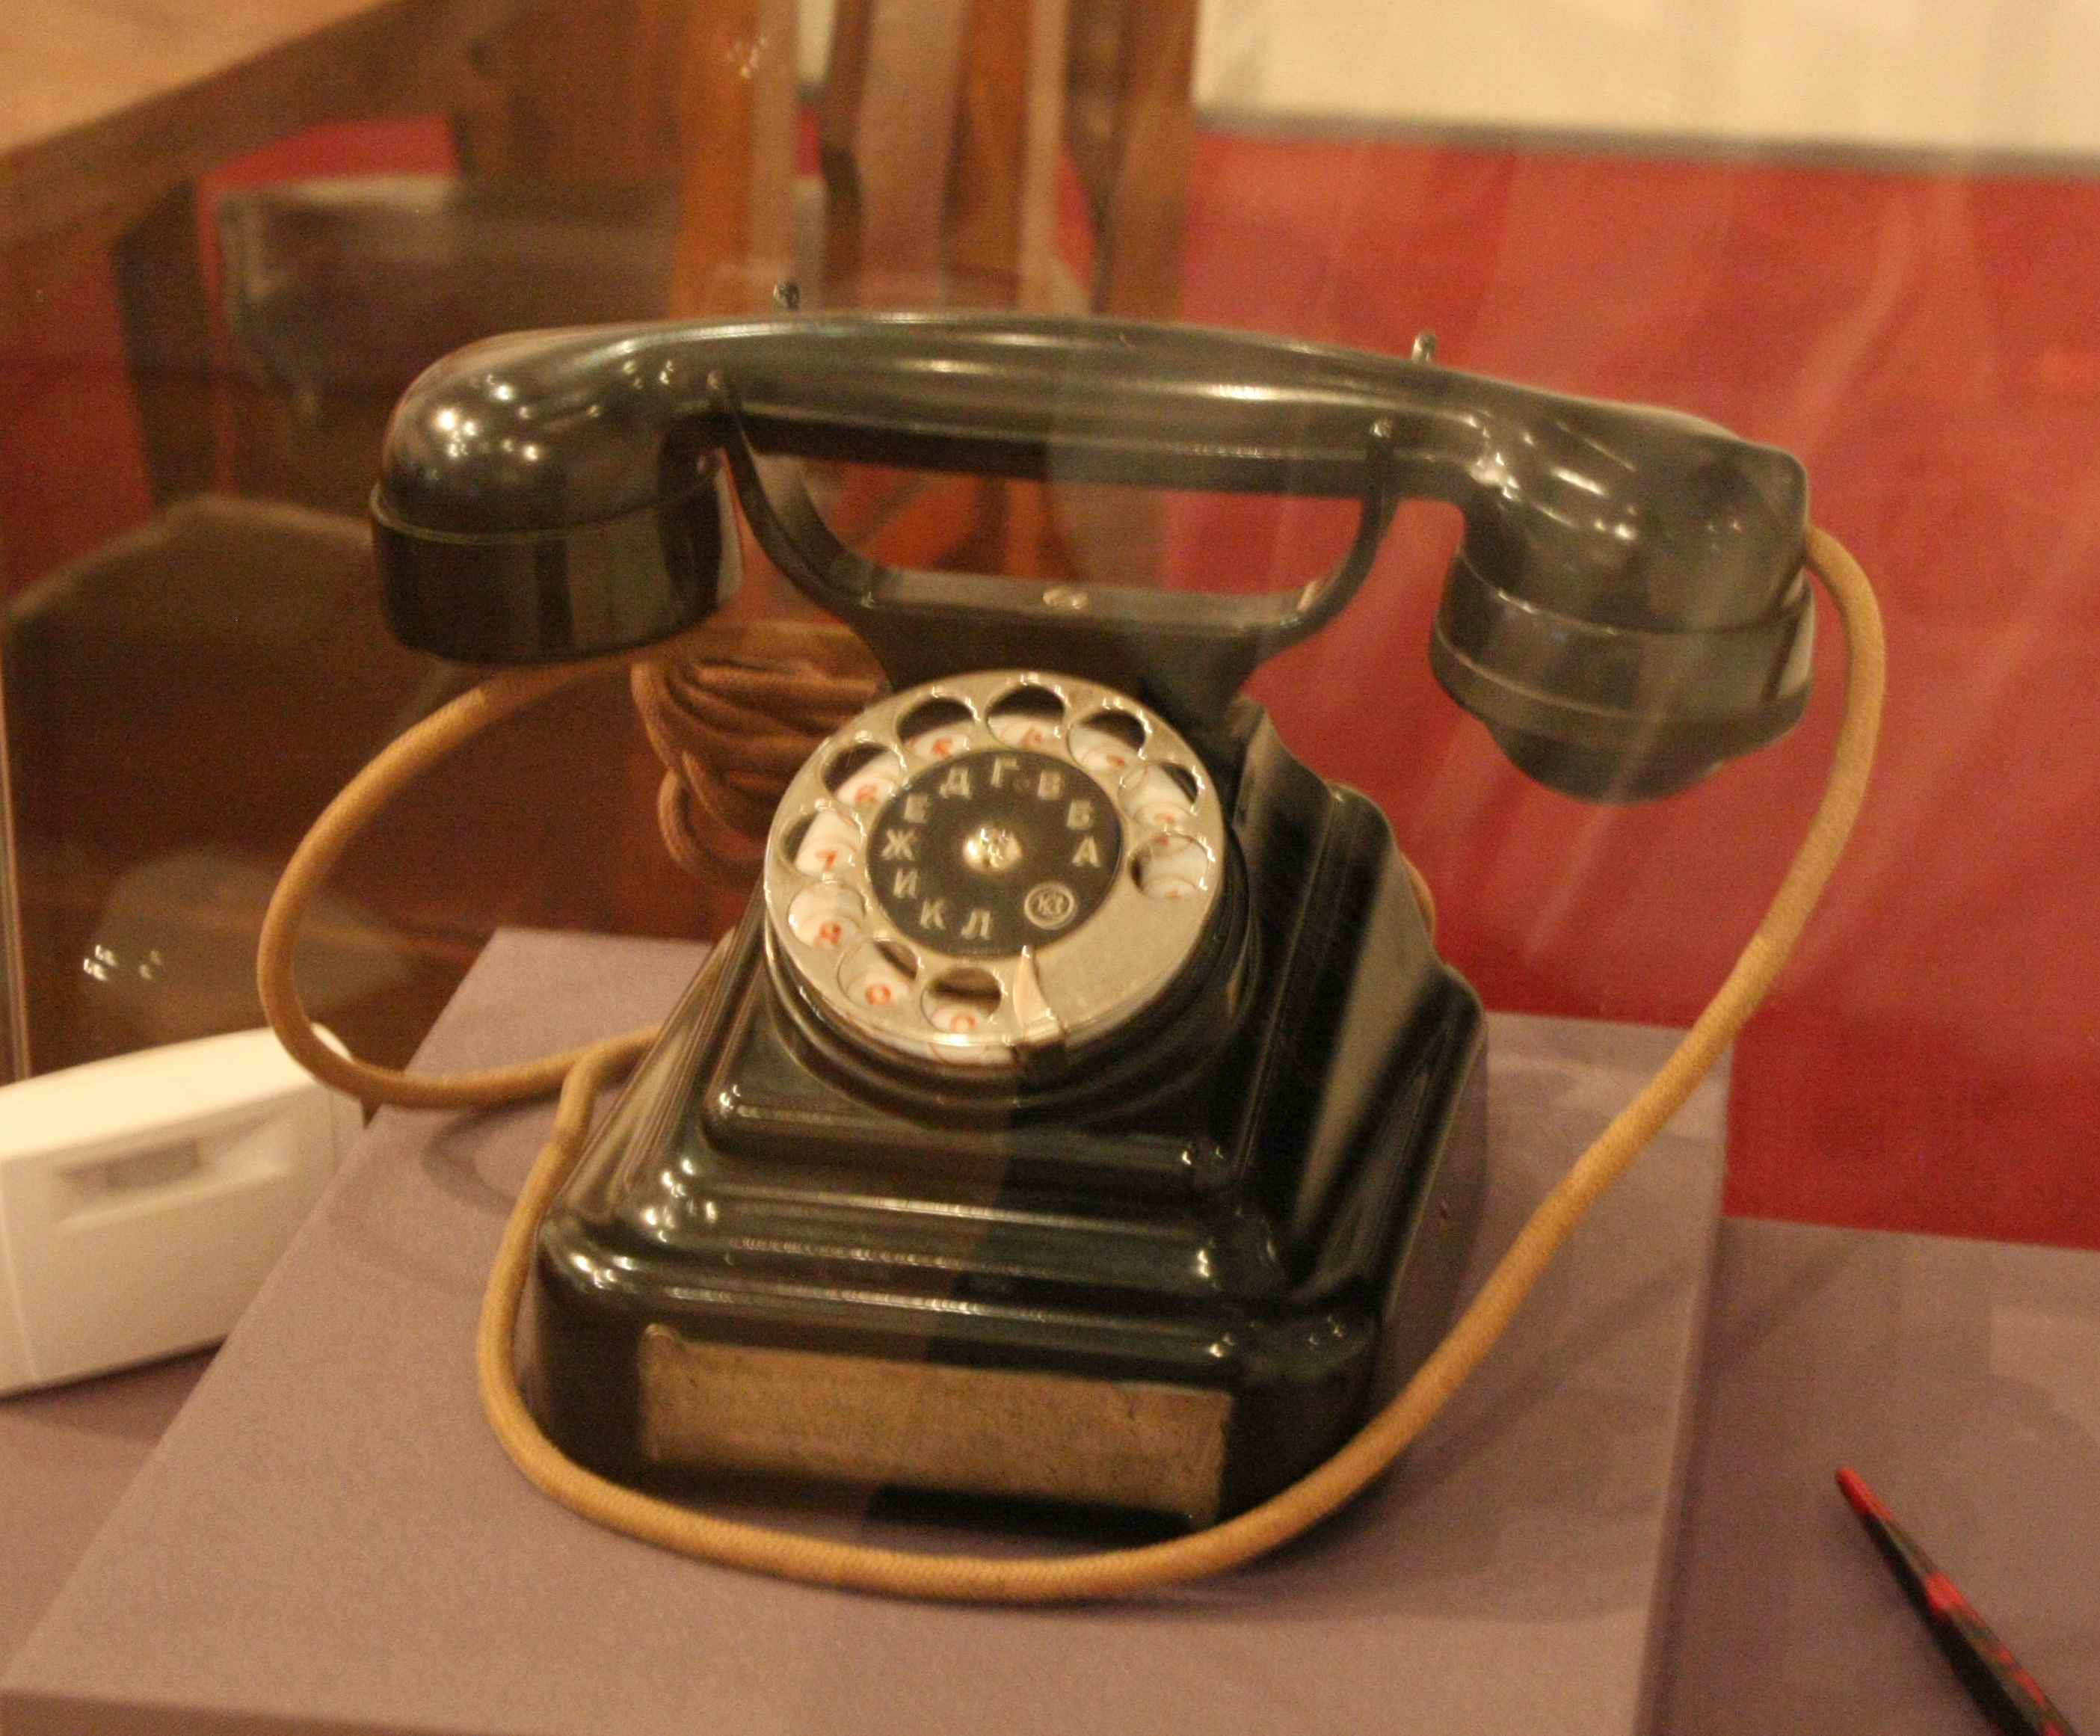 Та 50 телефон. Телефонный аппарат Tesla EC 2302. Сталинский телефонный аппарат. Советский телефон. Советский стационарный телефон.